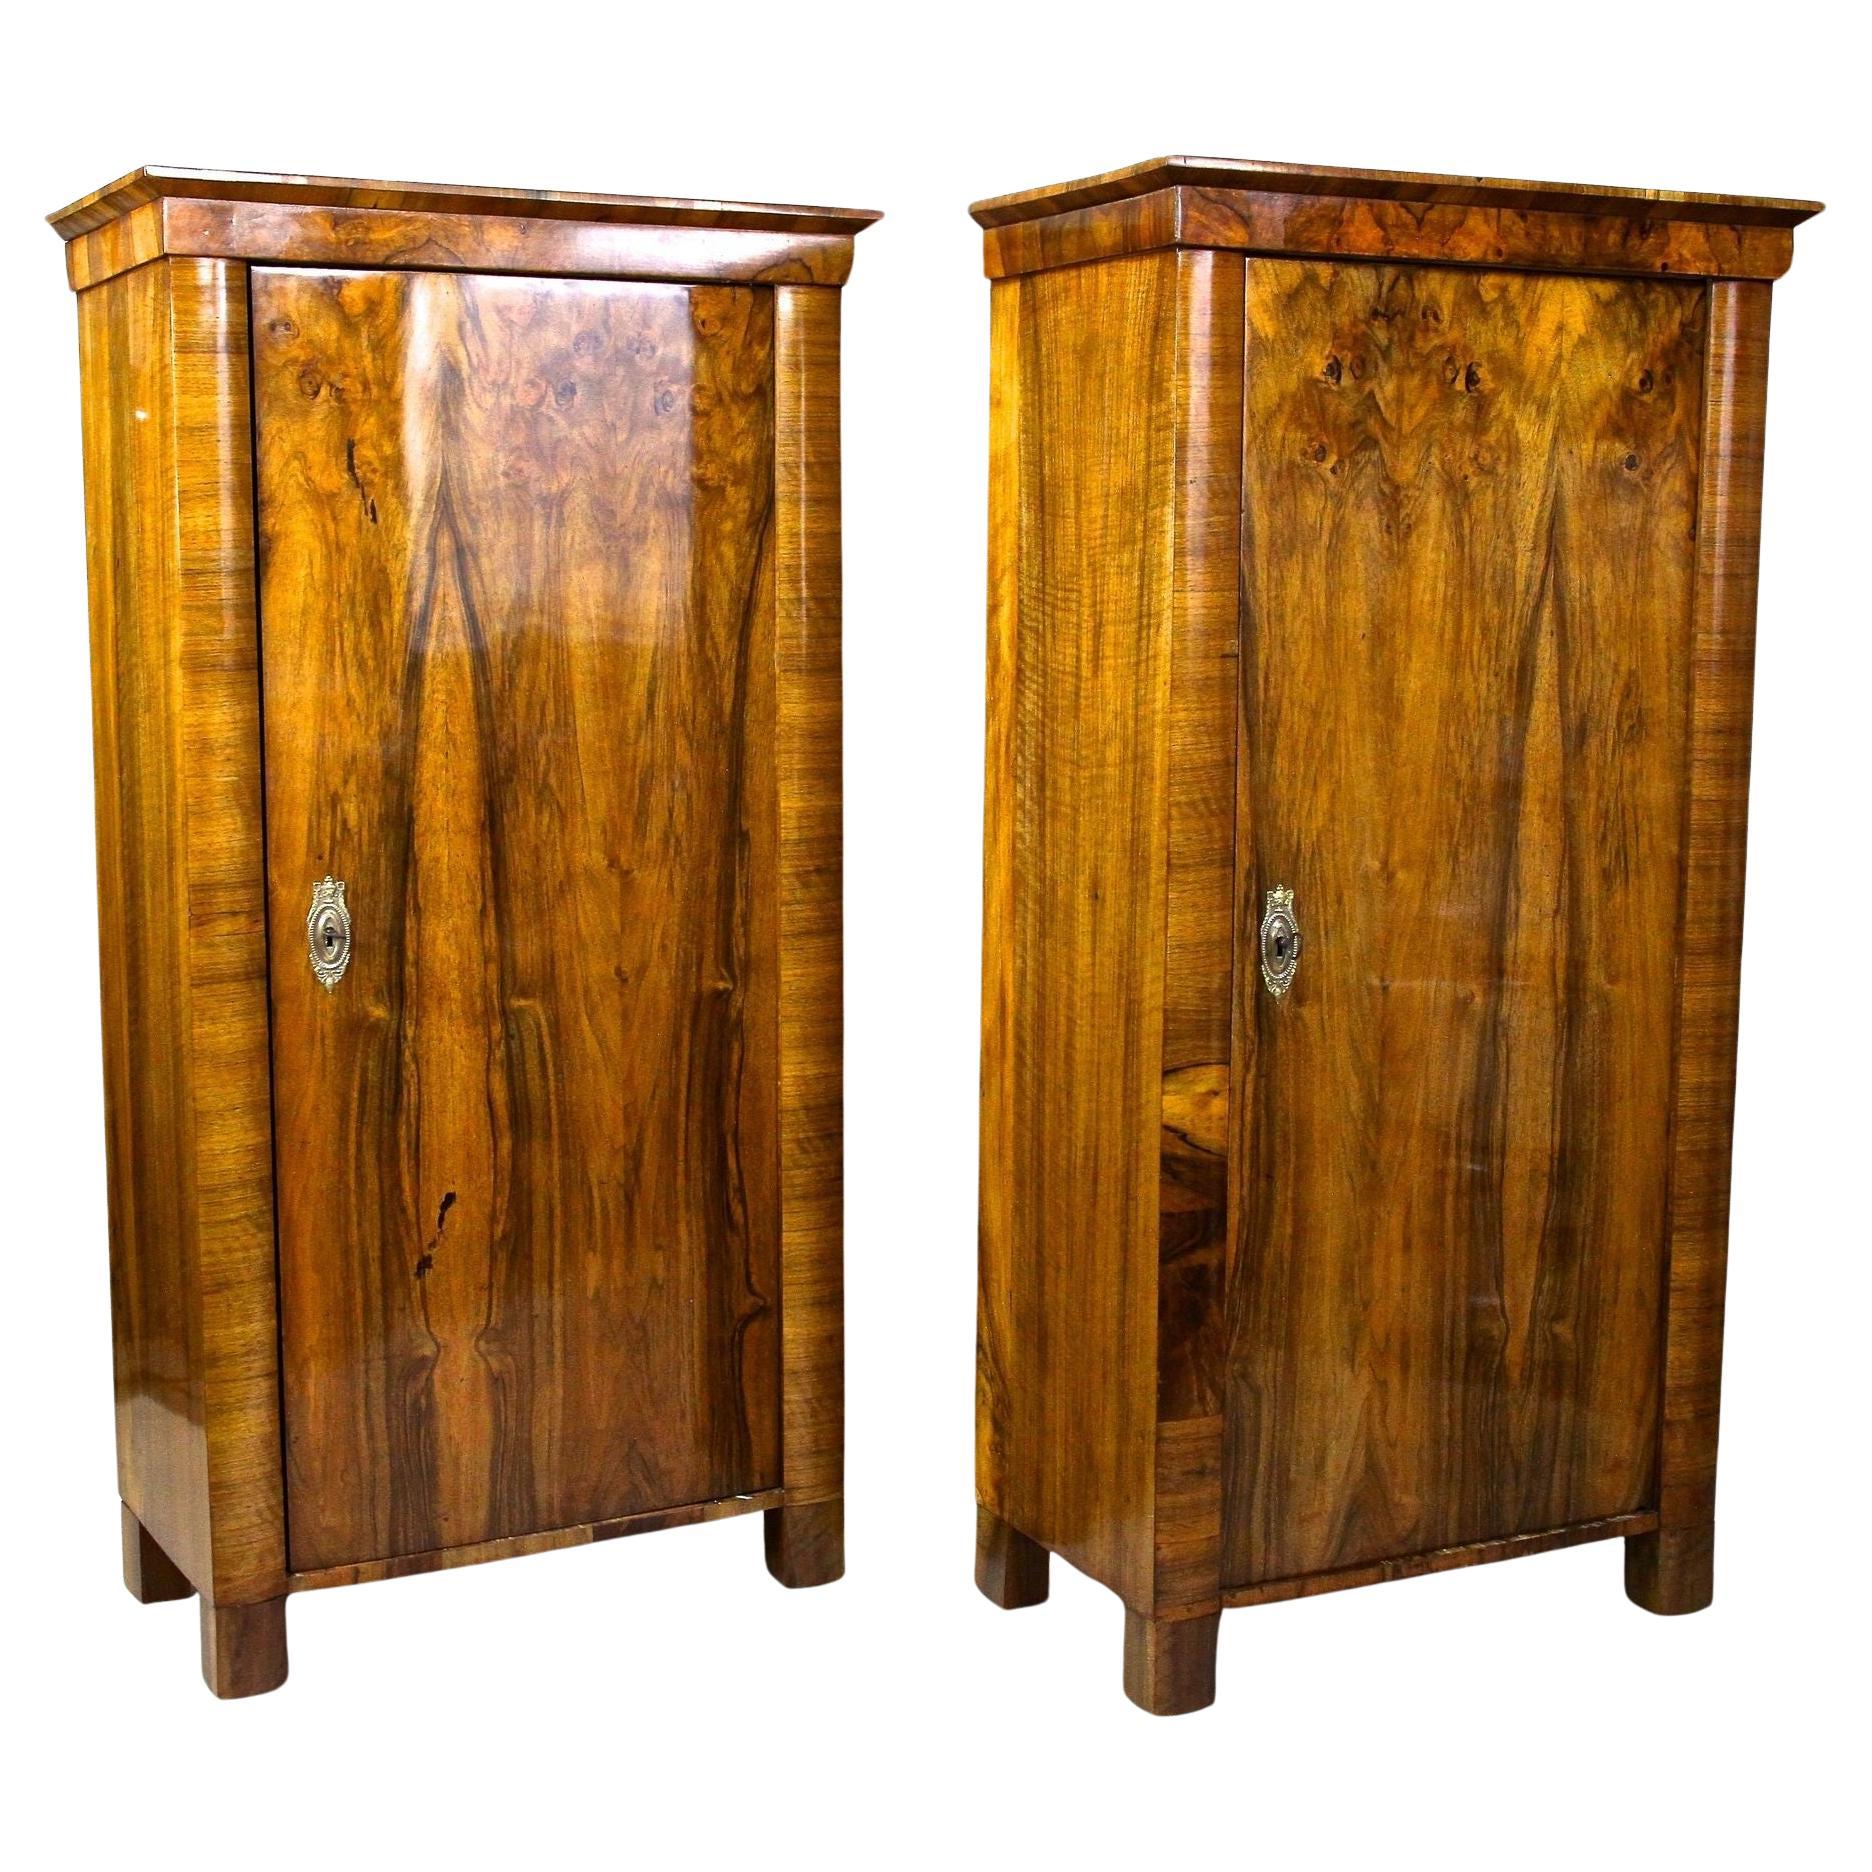 Paire de cabinets Biedermeier en bois de noyer - 19e siècle, Autriche vers 1830 en vente